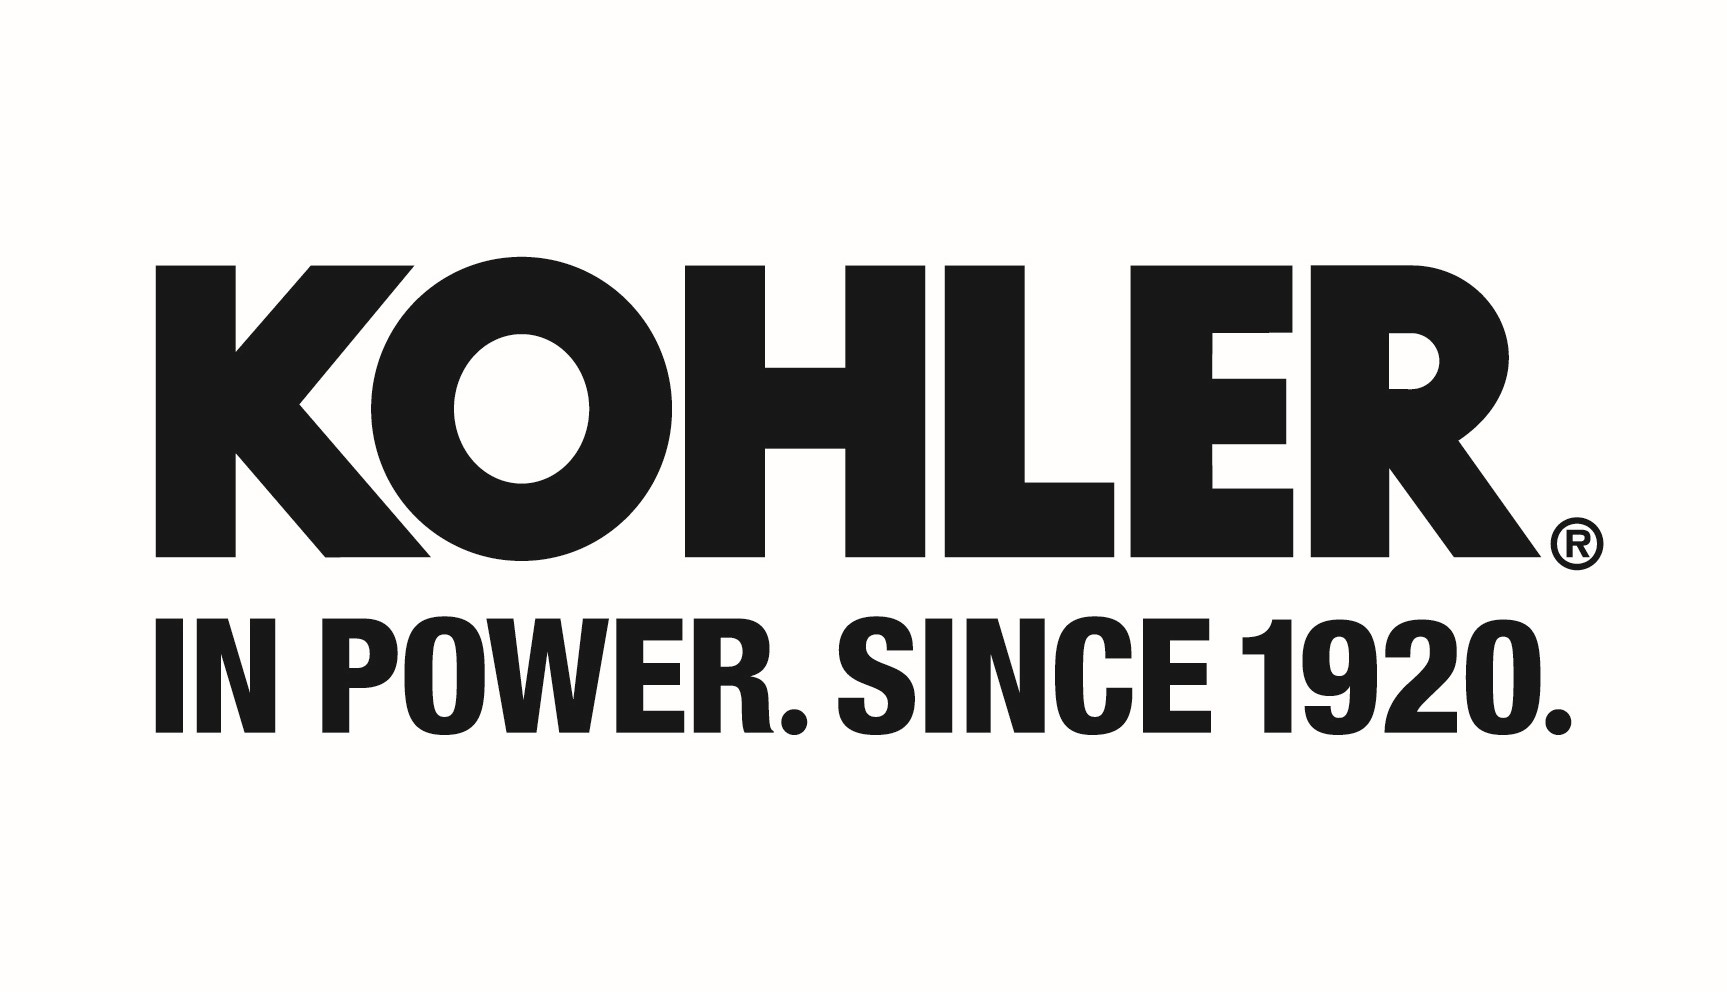 KOHLER POWER SYSTEMS